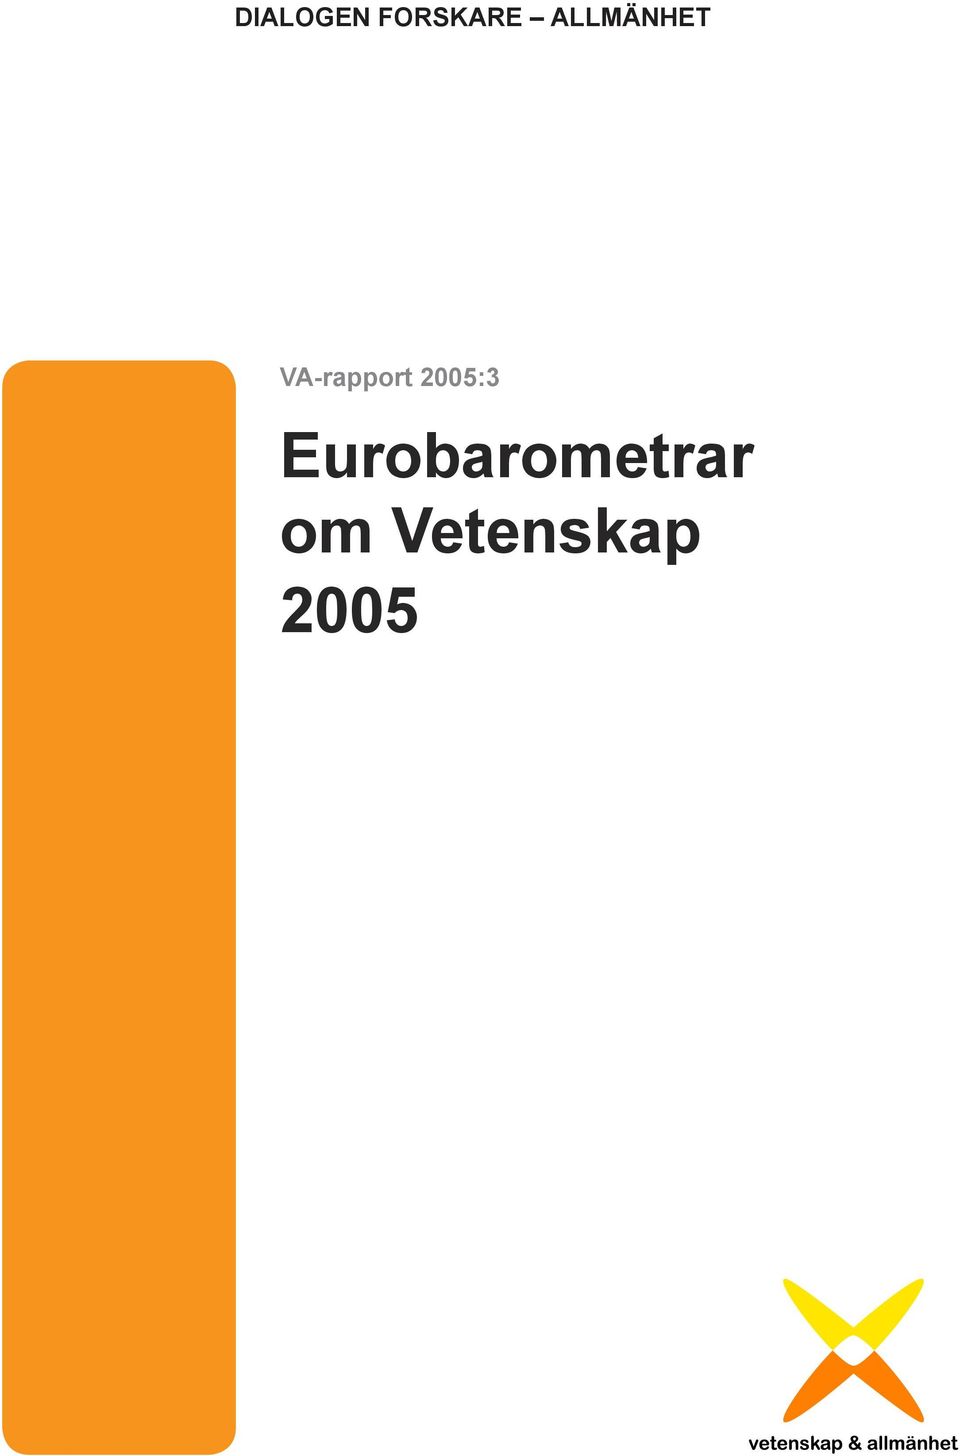 VA-rapport 2005:3